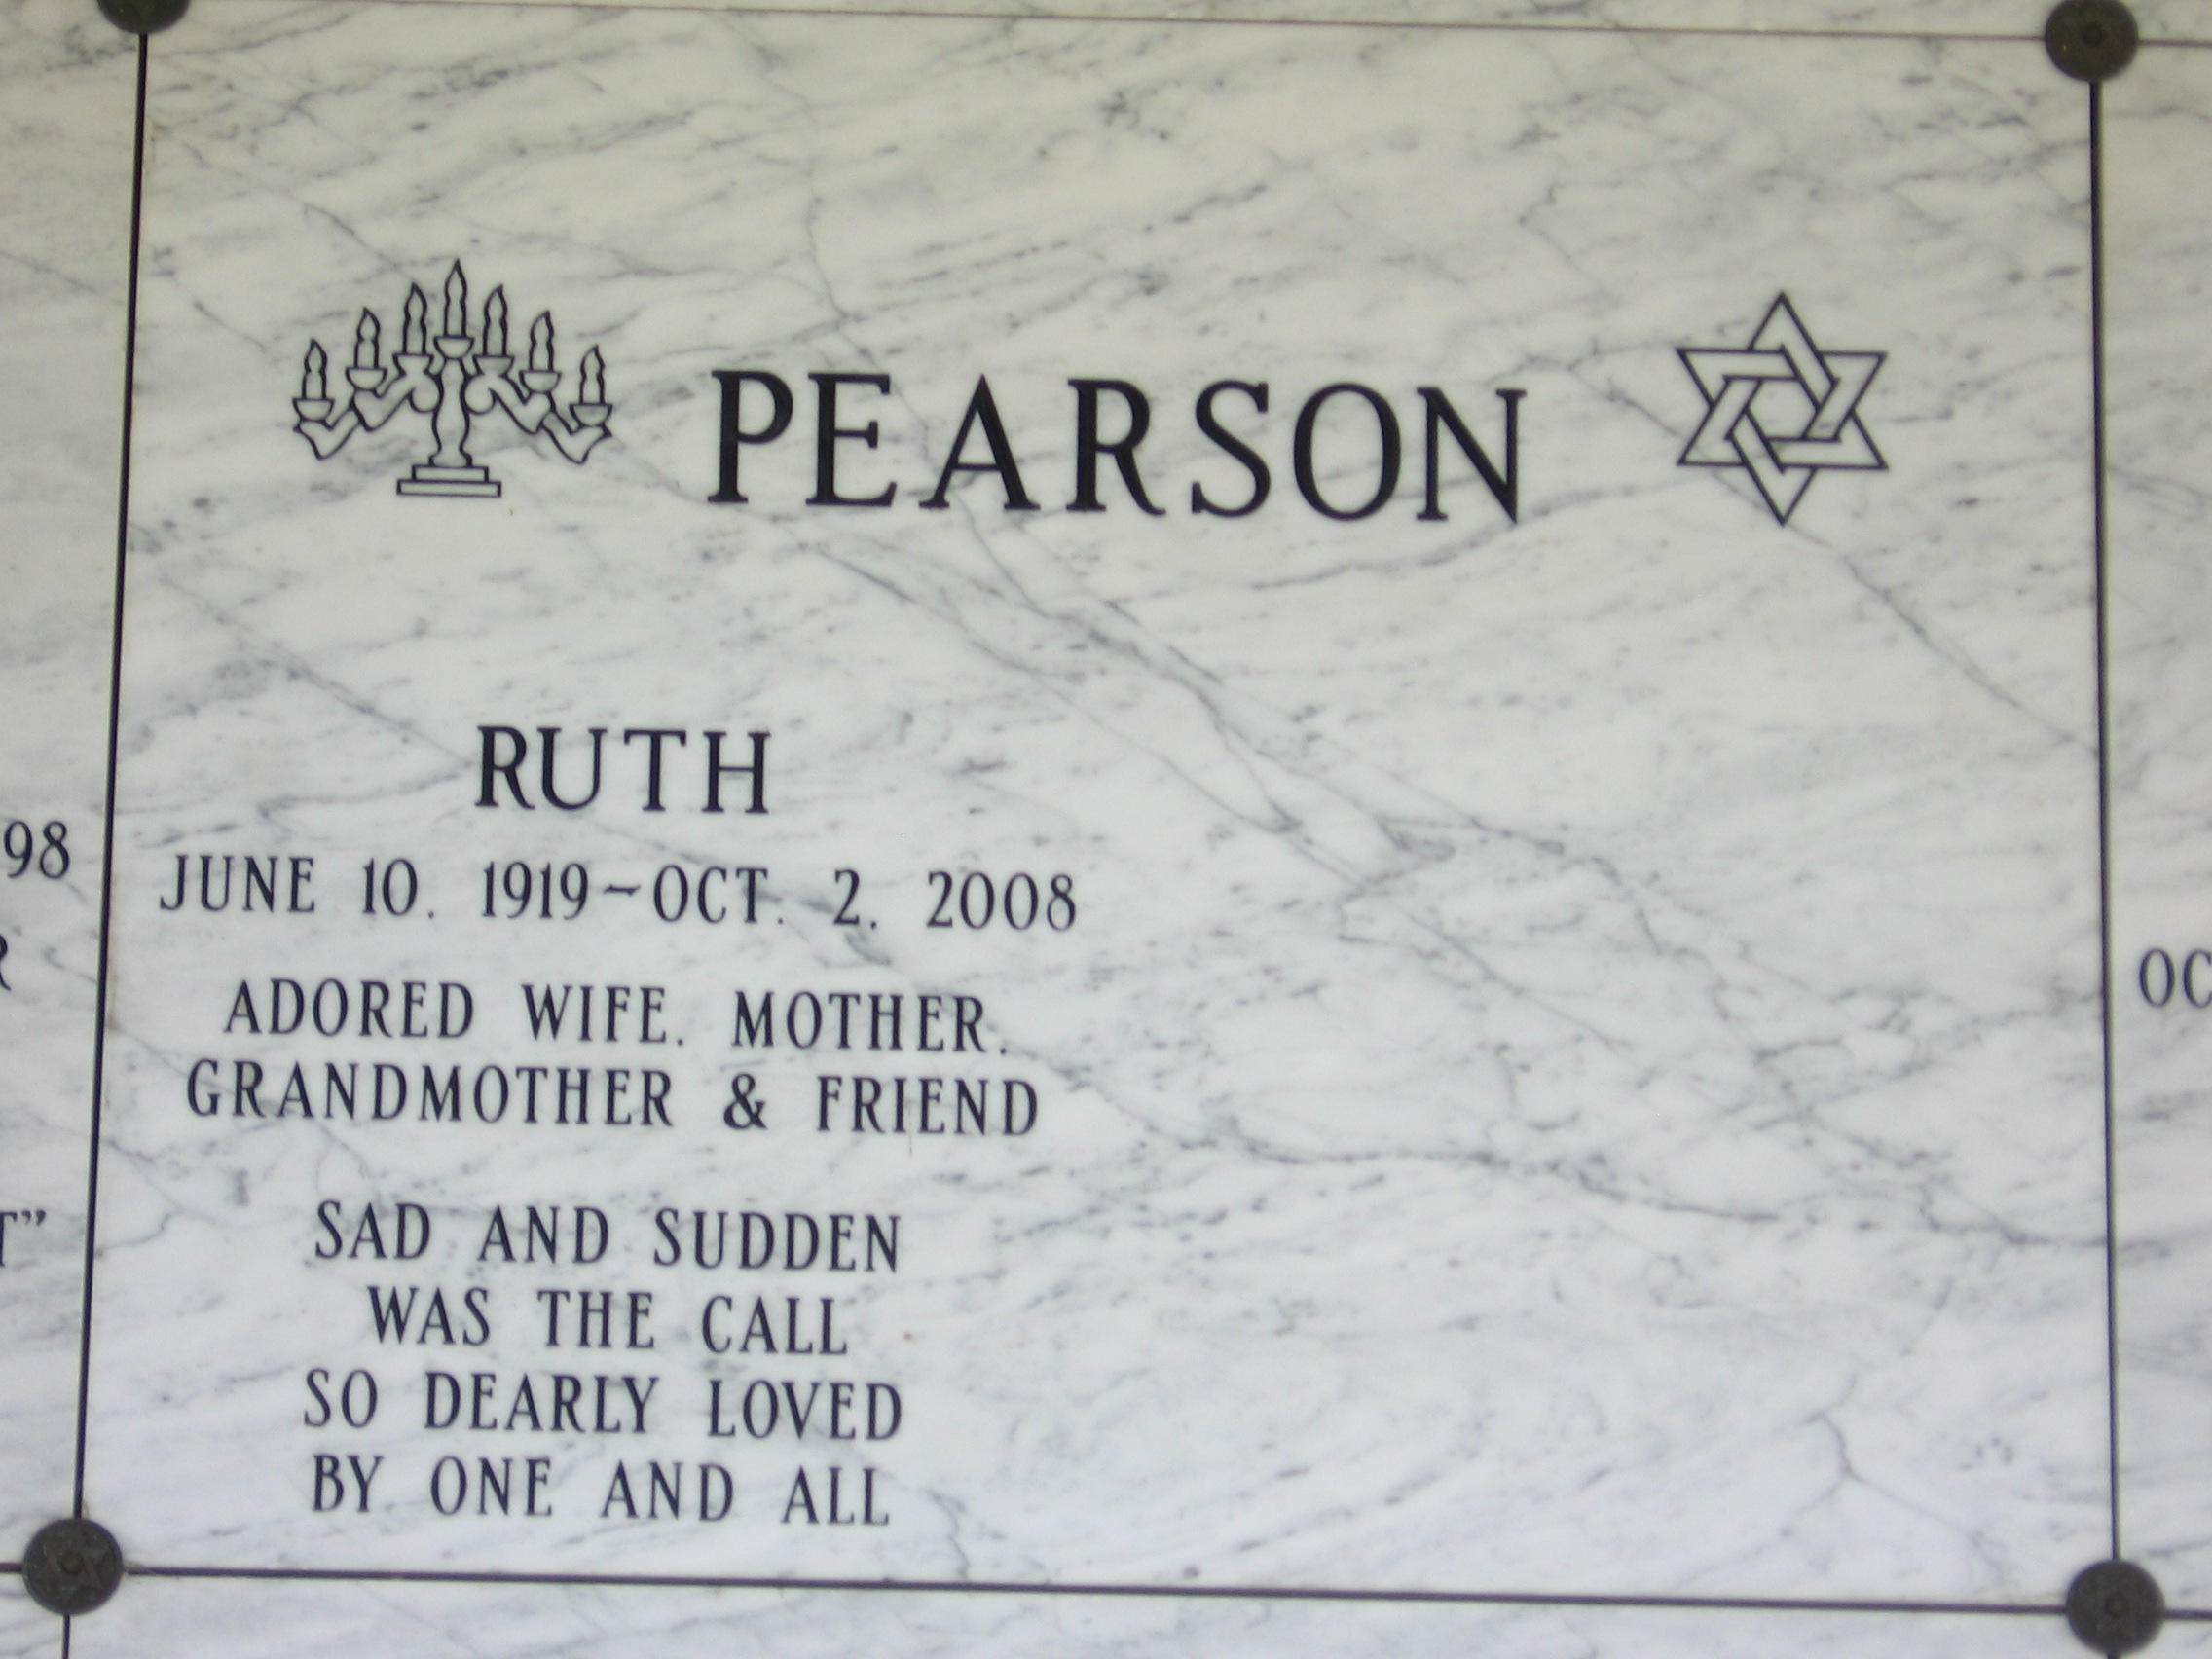 Ruth Pearson